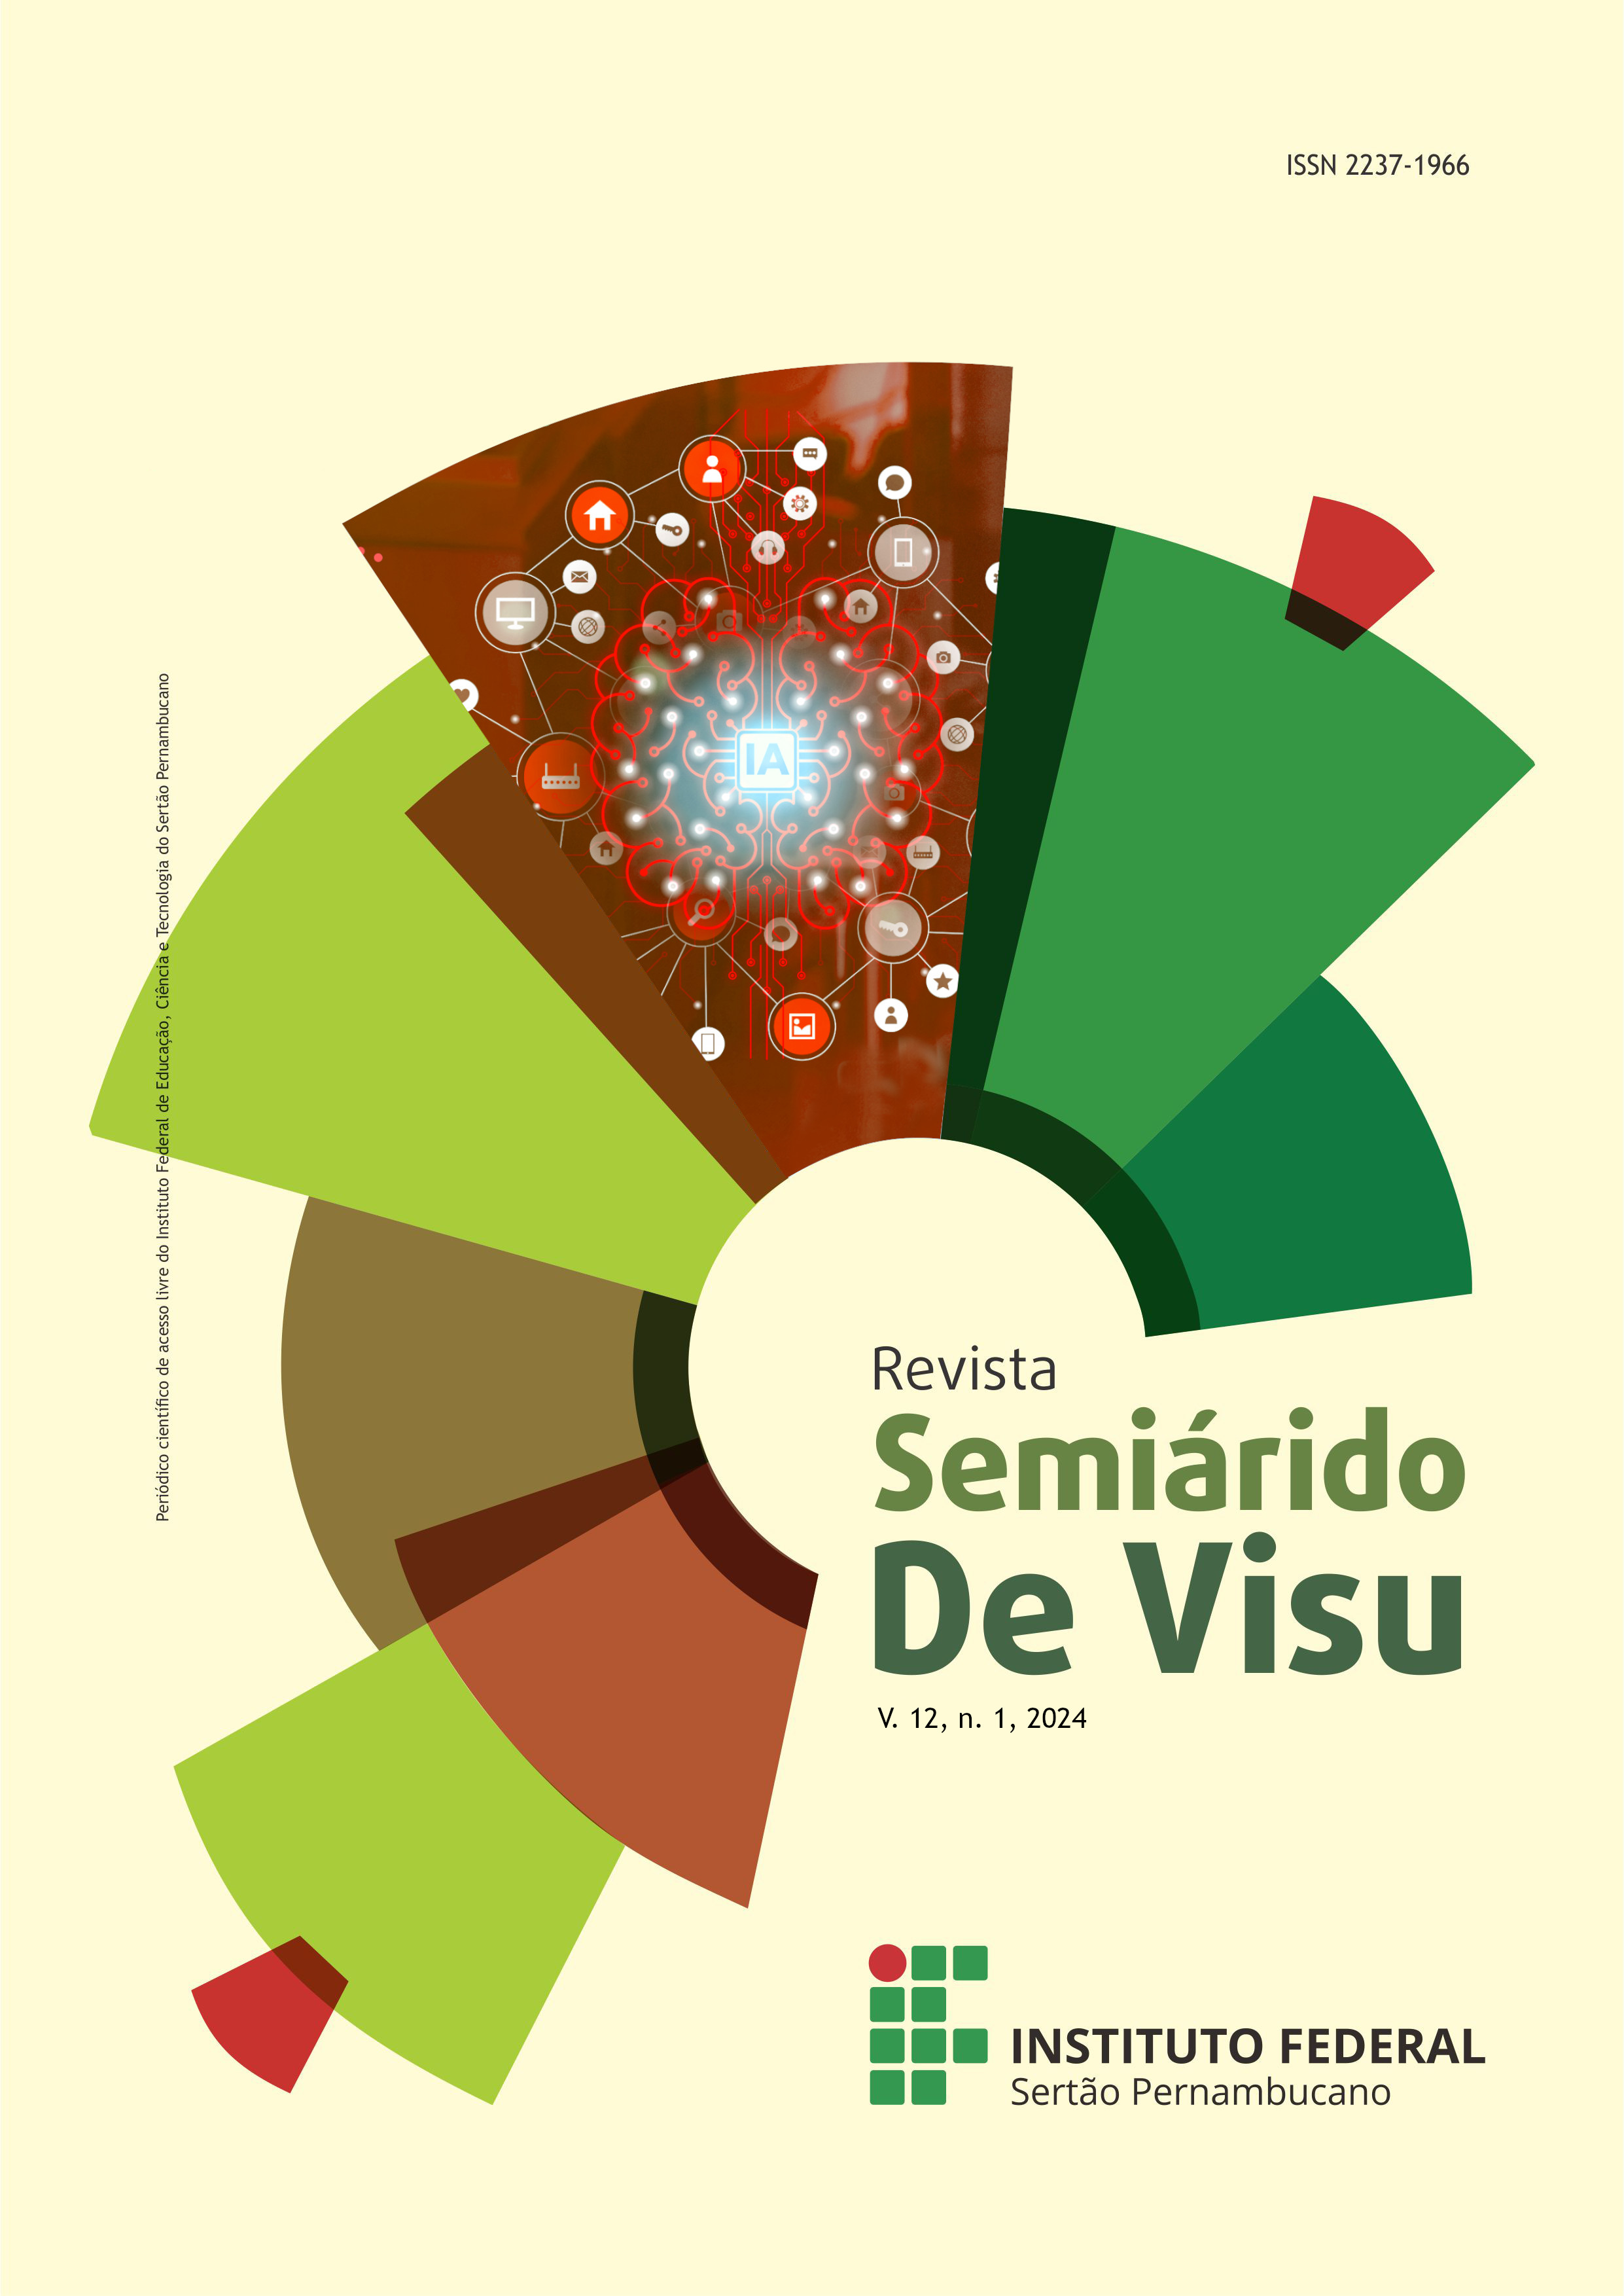 					Visualizar v. 12 n. 1 (2024): Revista Semiárido De Visu (V. 12; N. 1; 2024)
				